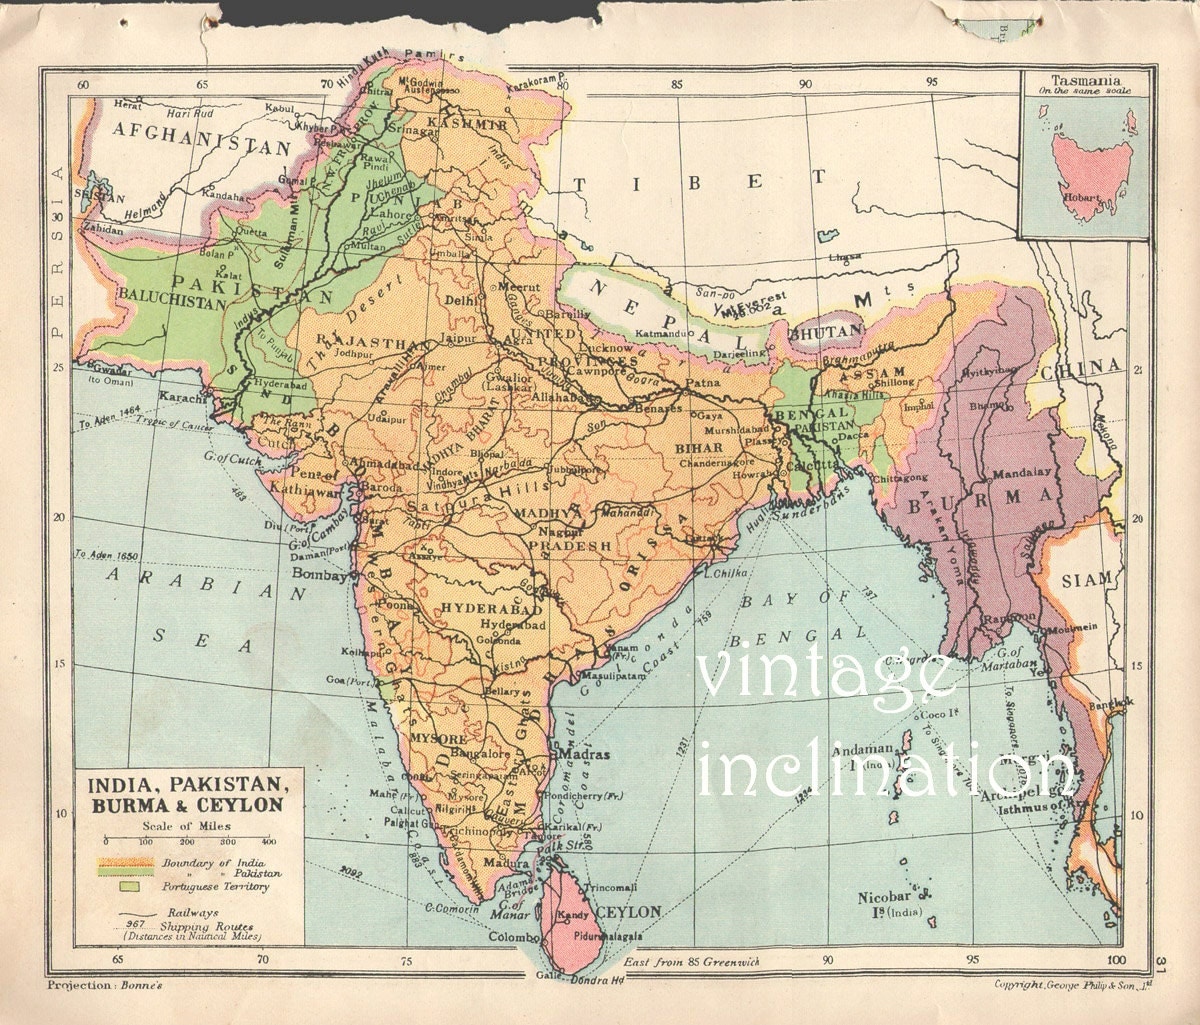 original map of india